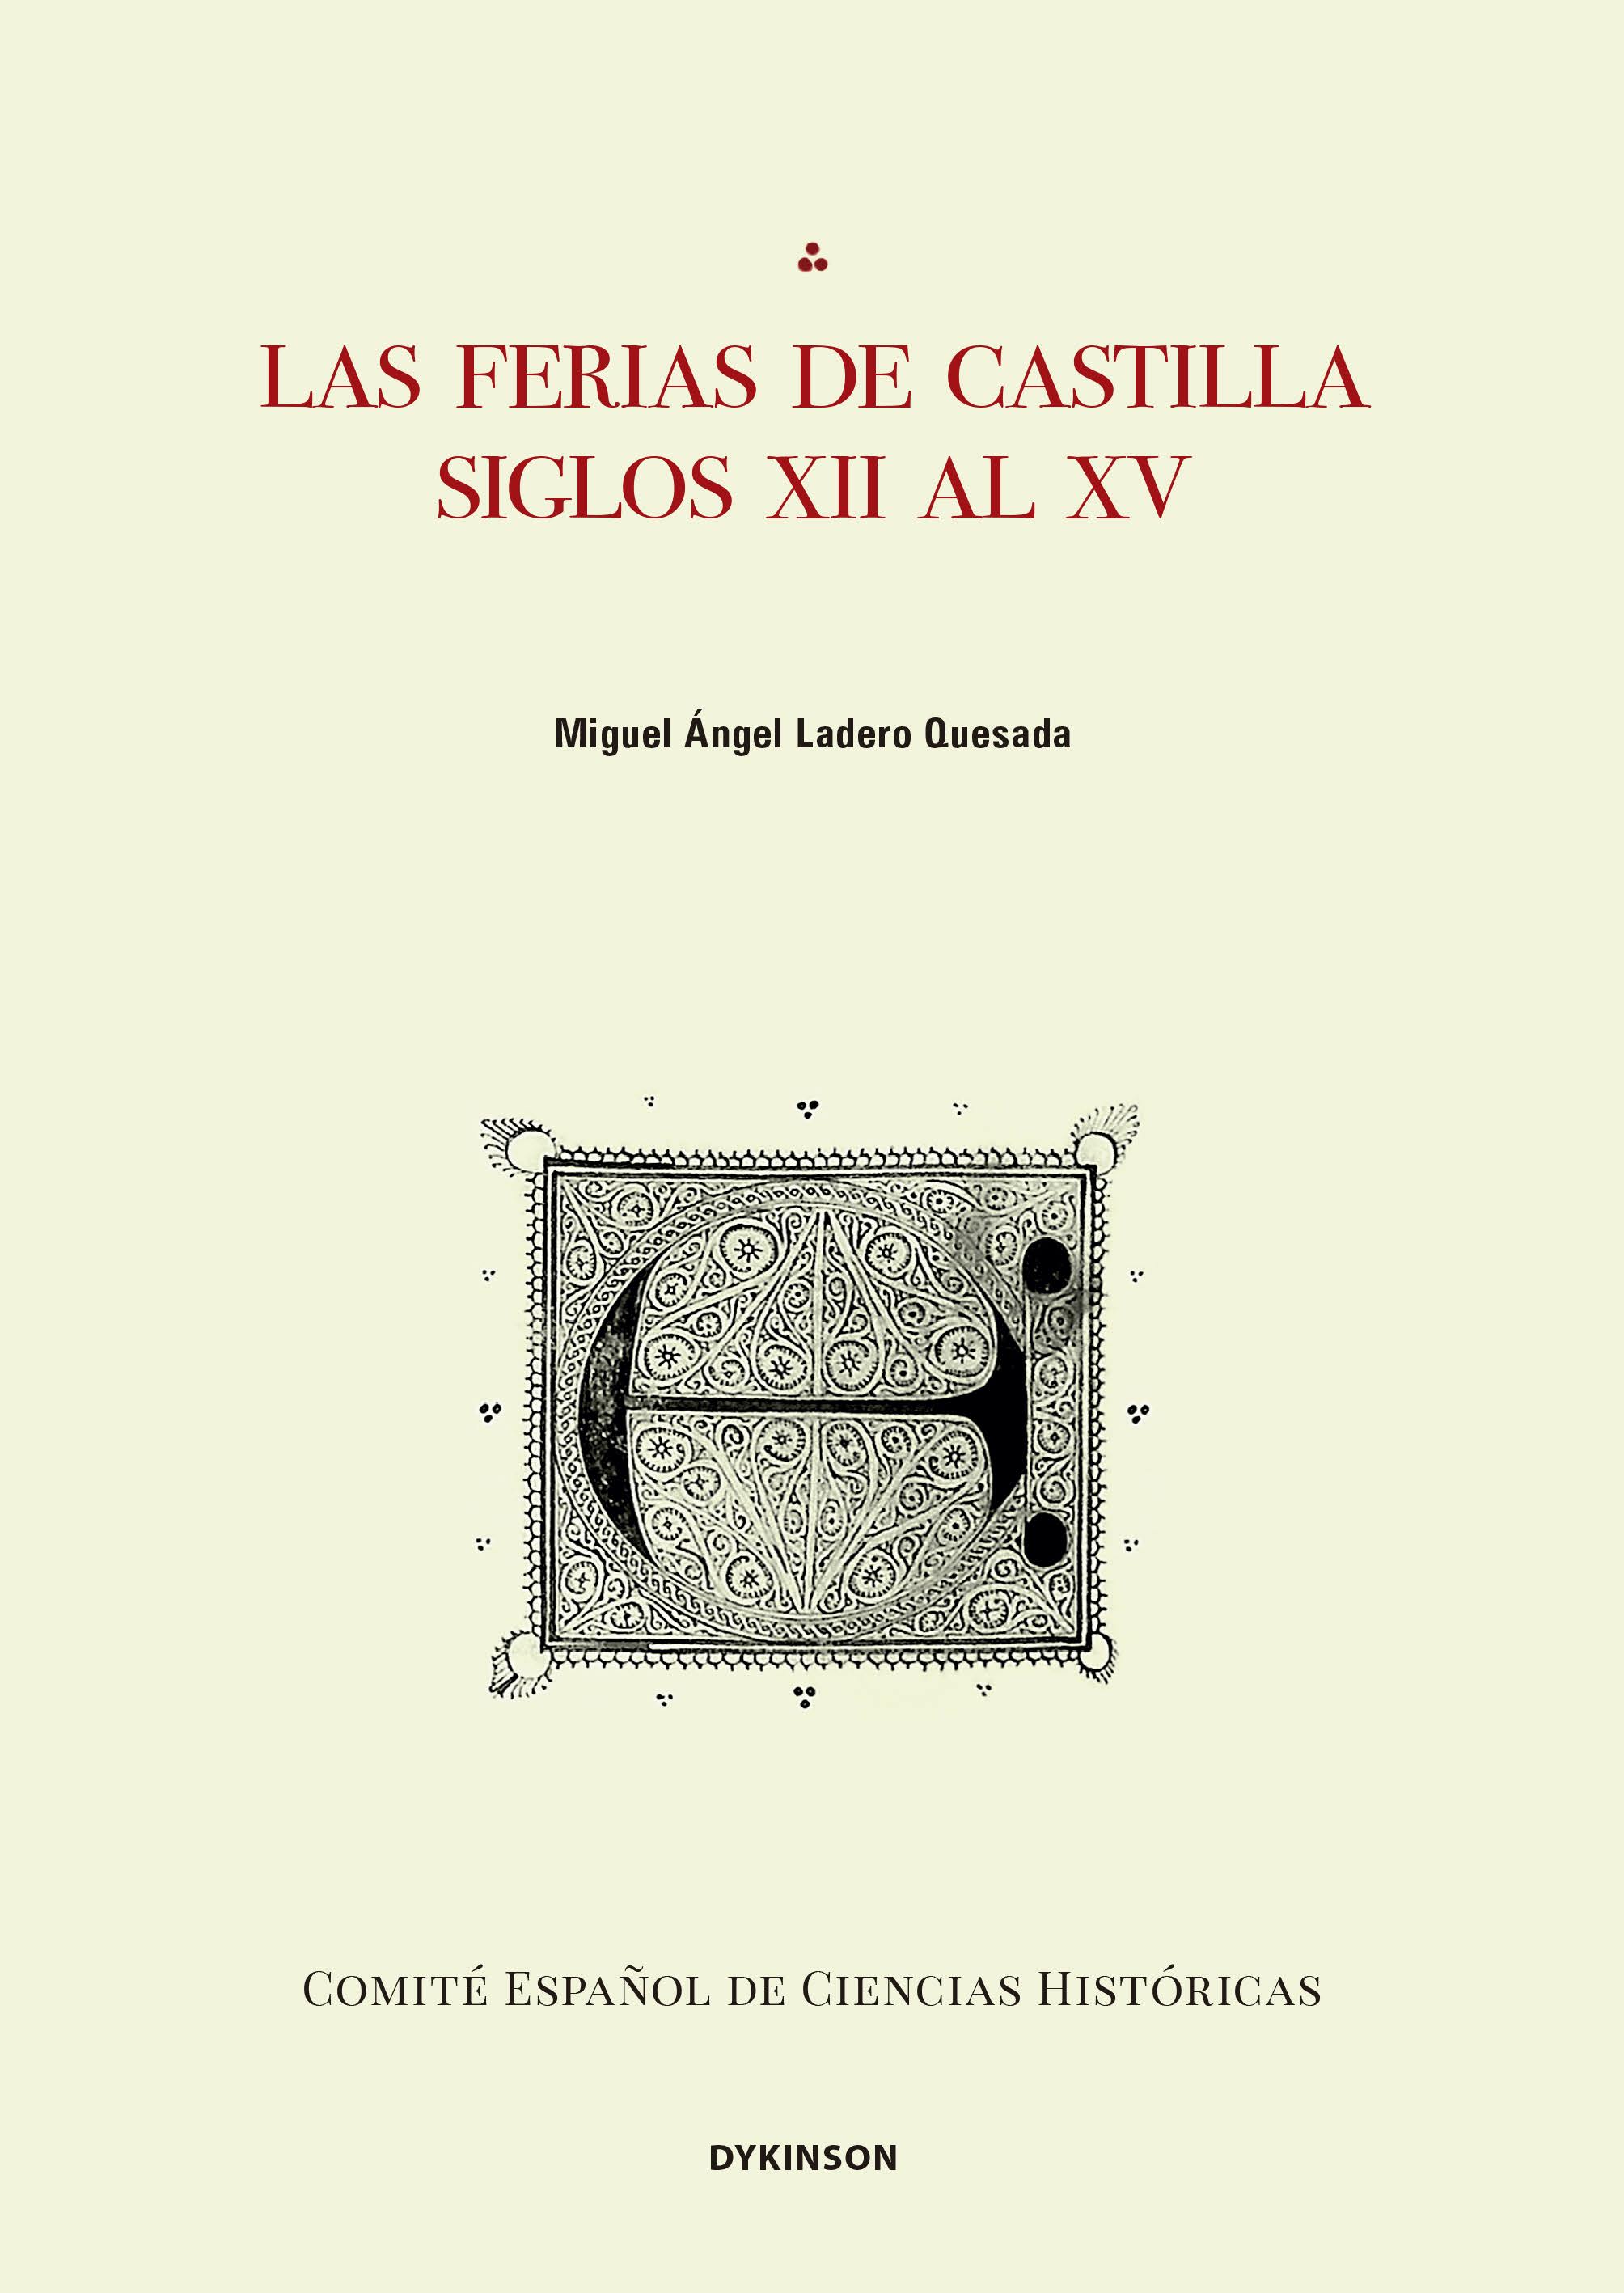 Las ferias de Castilla 